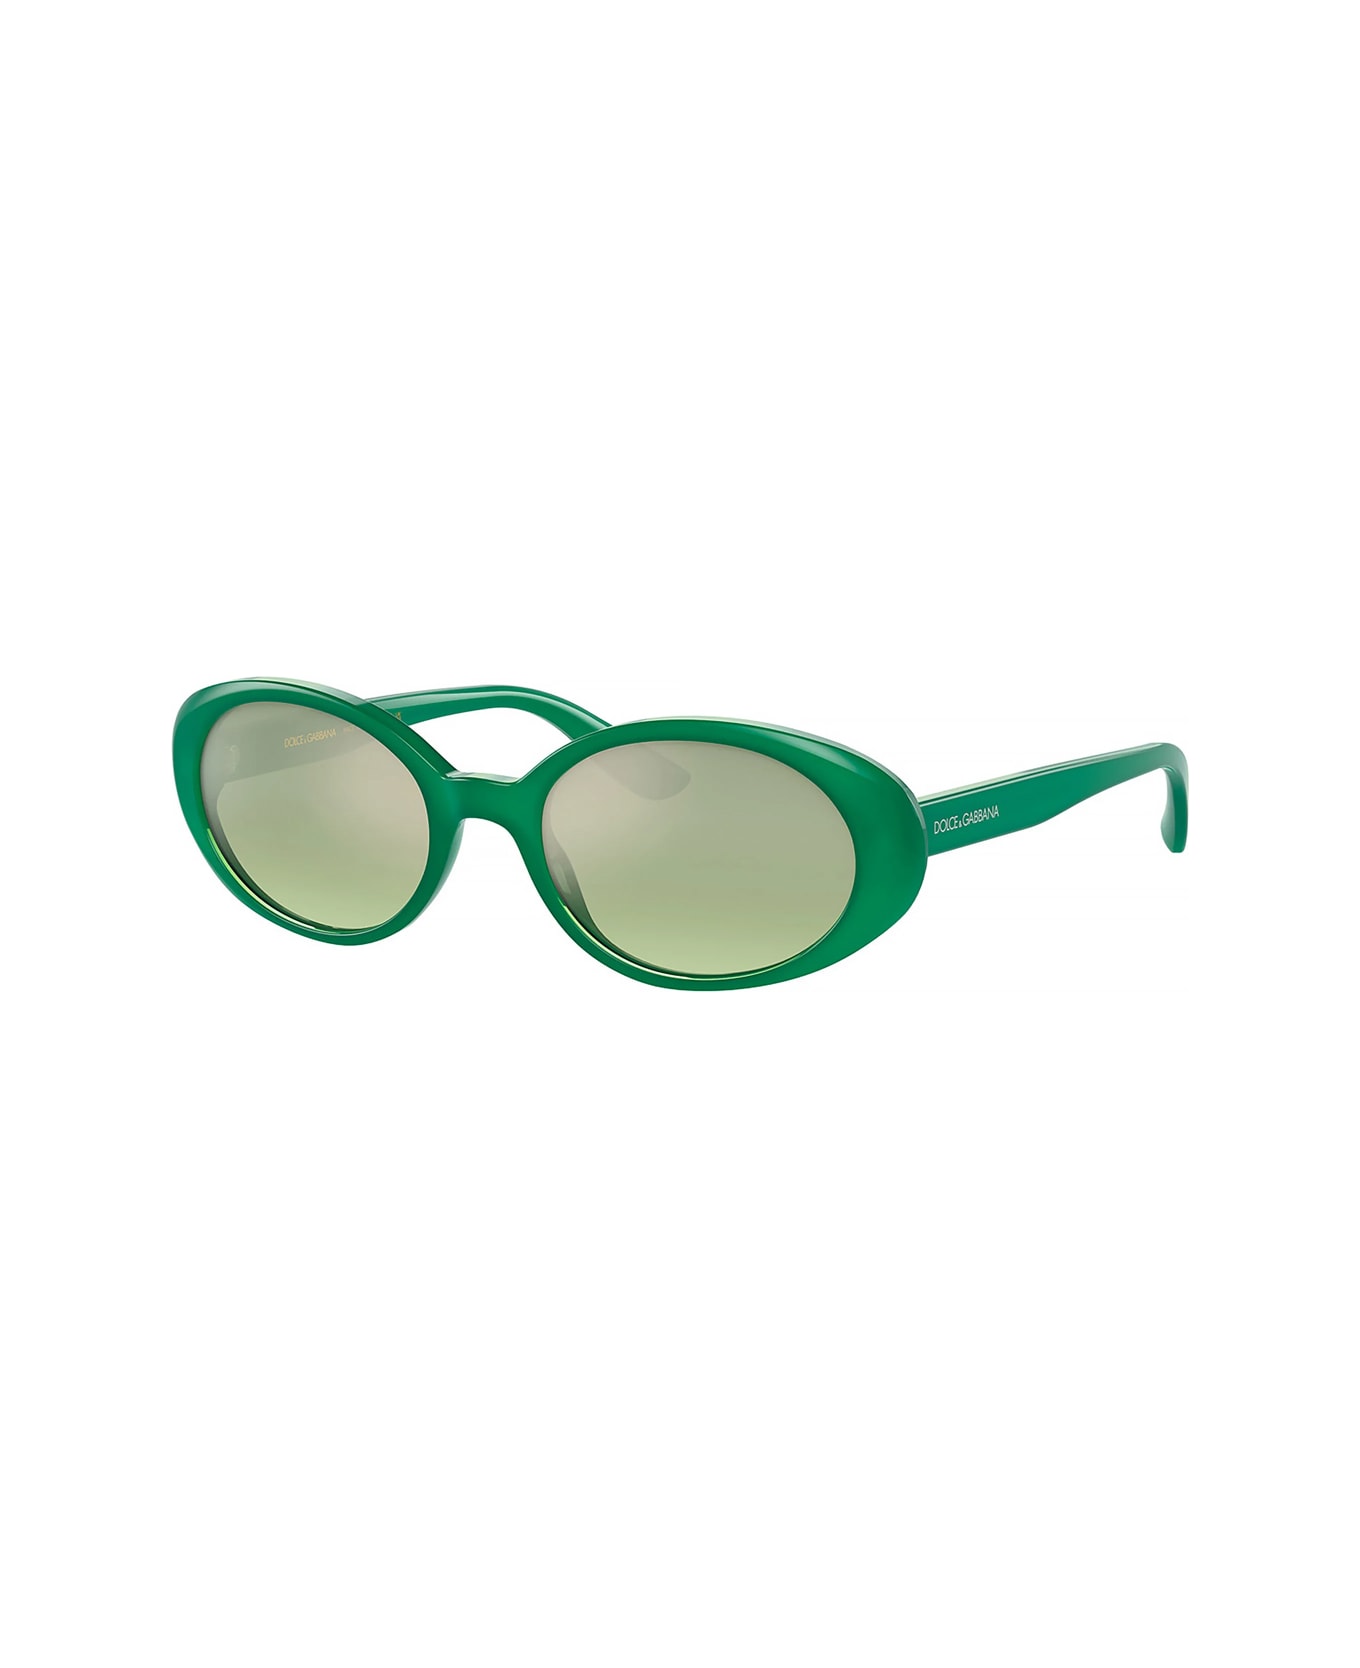 Dolce & Gabbana Eyewear Dg4443 306852 Sunglasses - Verde サングラス